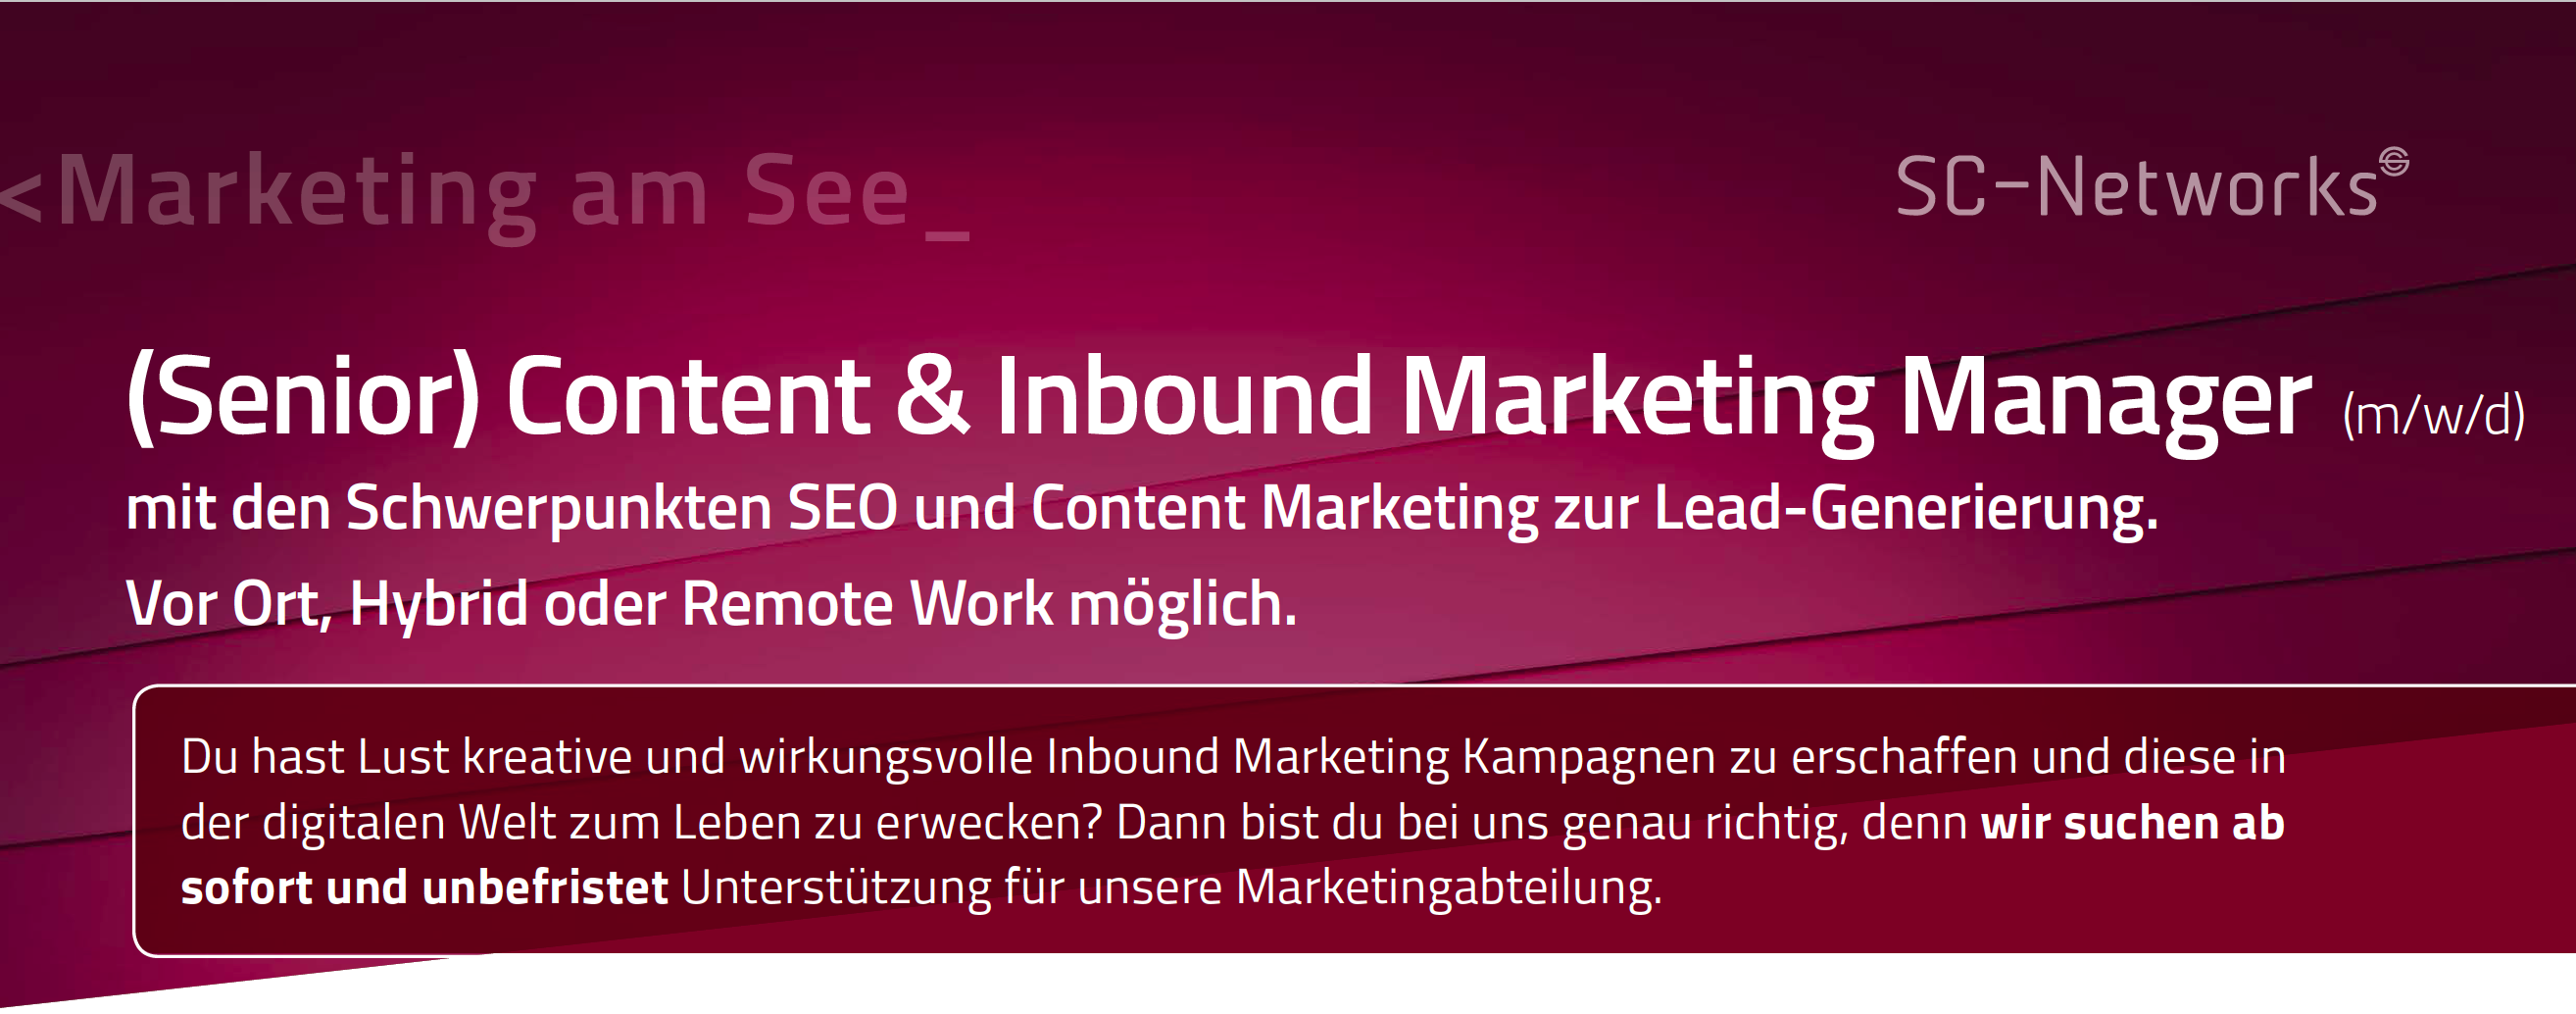 (Senior) Content & Inbound Marketing Manager (m/w/d)